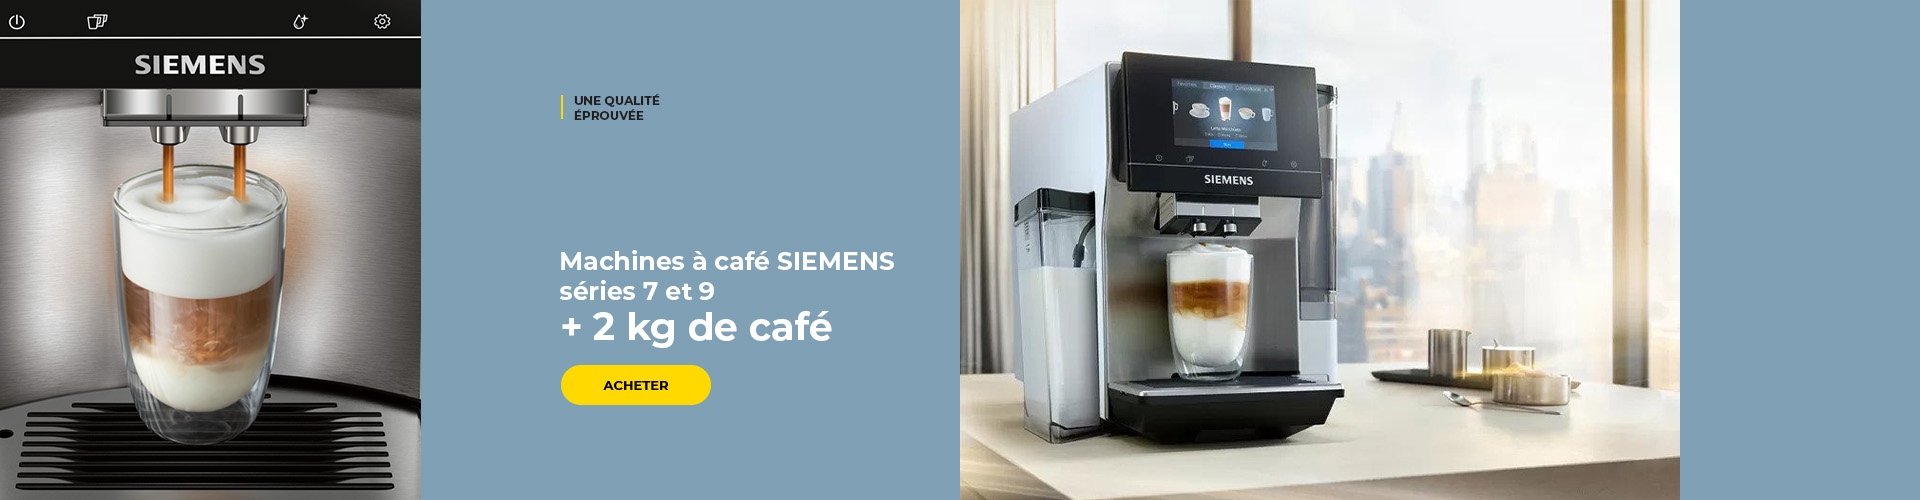 Machines à café SIEMENS séries 7 et 9 + 2 kg de café